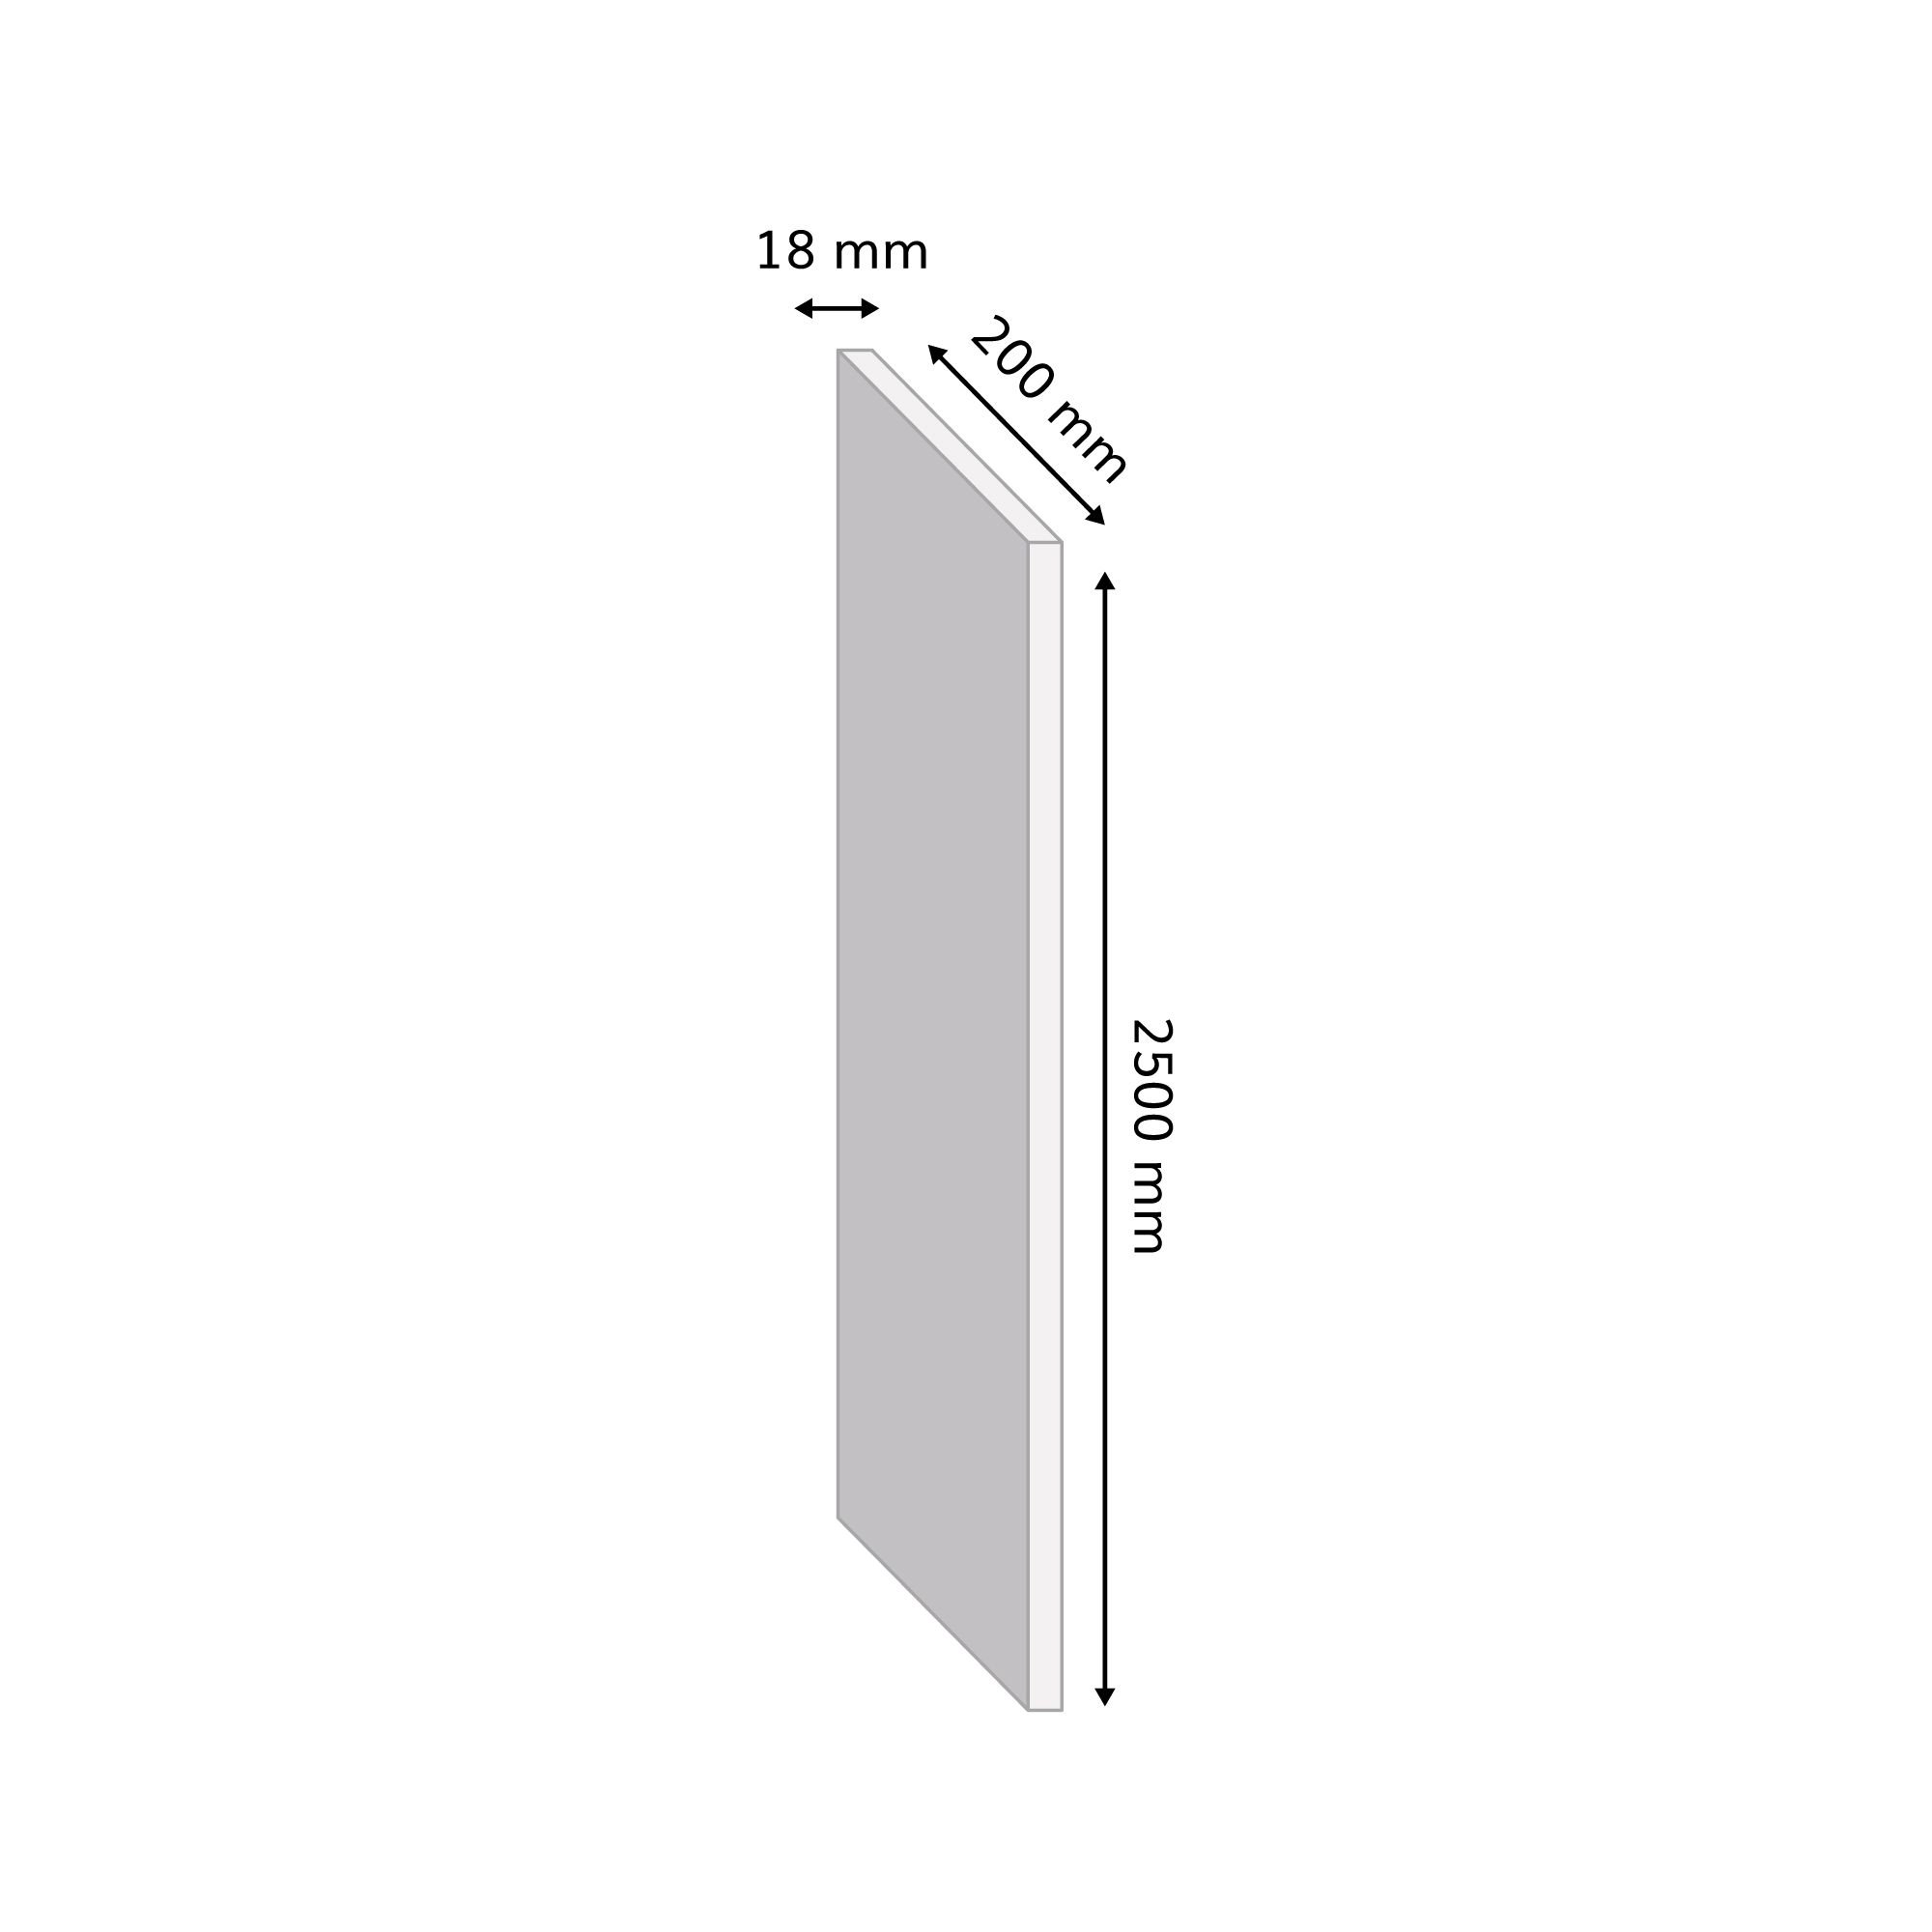 White Gloss Semi edged Furniture panel, (L)2.5m (W)200mm (T)18mm